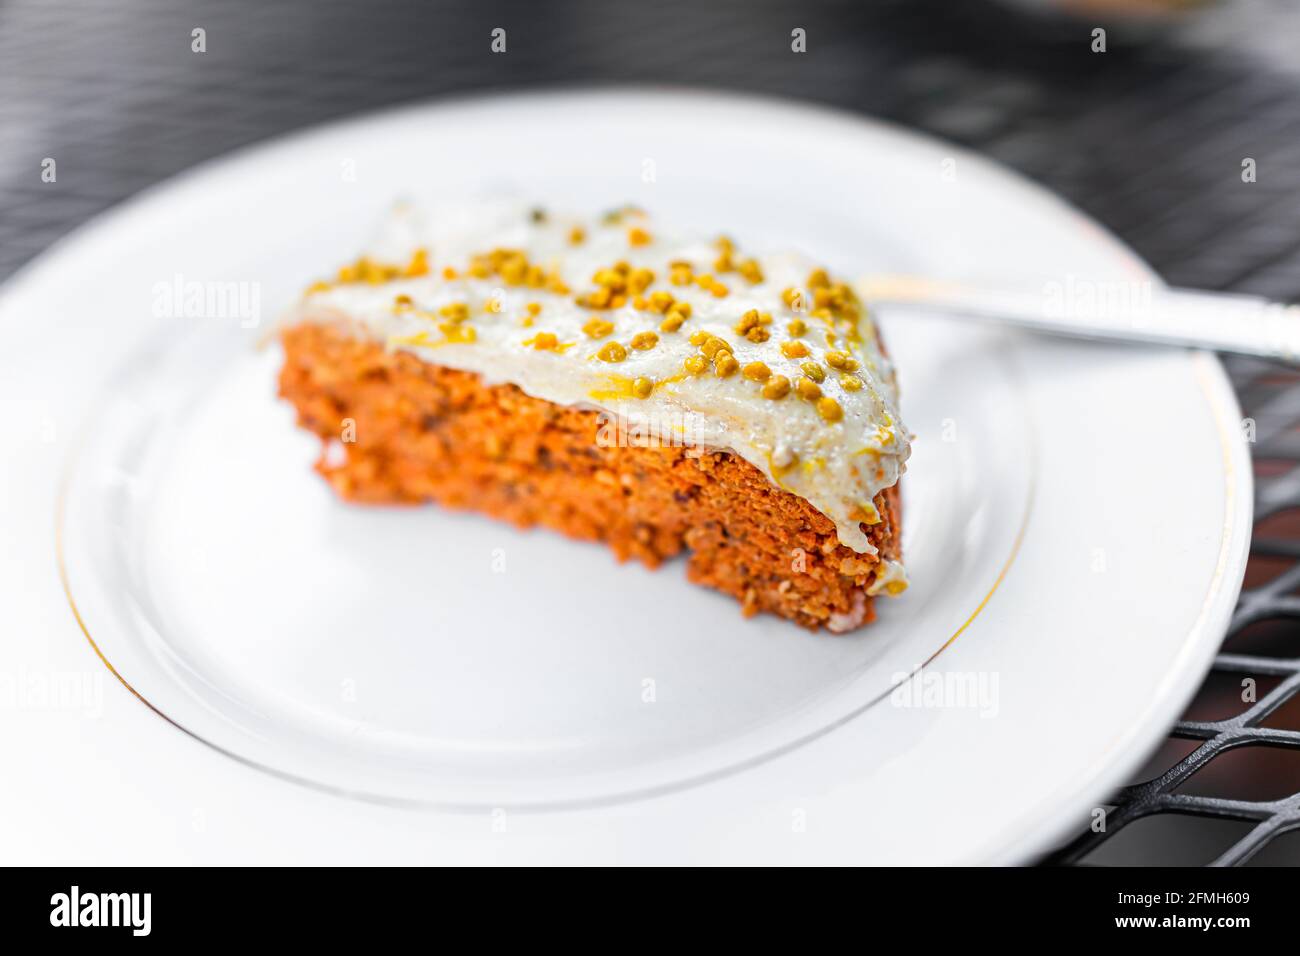 Karottenkuchen Stückchen auf weißem Teller süß roh Dessert Mit Frischkäse-Zuckerguss und orangefarbener Textur mit Bienenpollen Darauf gestreut Stockfoto